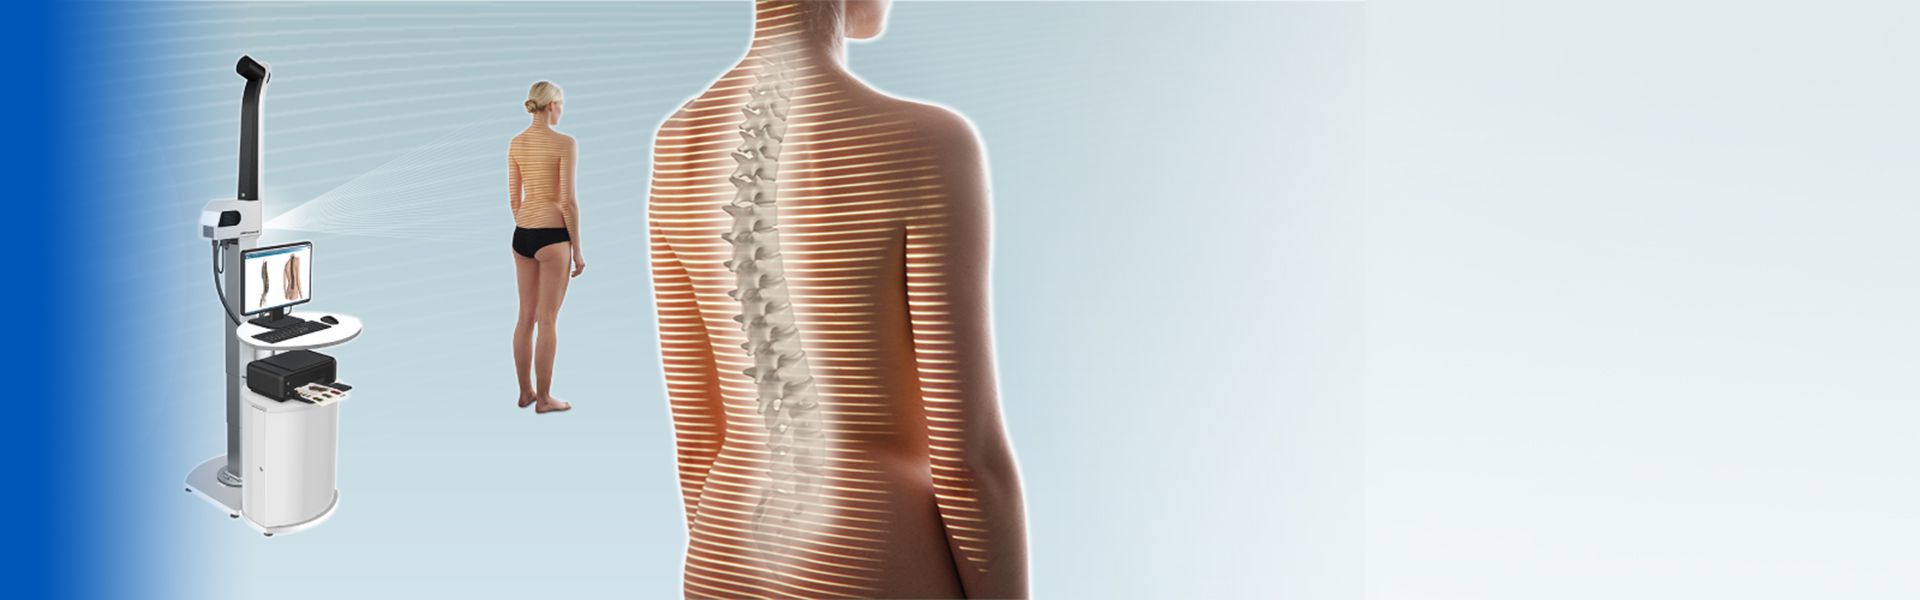 Phân tích cột sống kỹ thuật số - Digital Spine Analysis